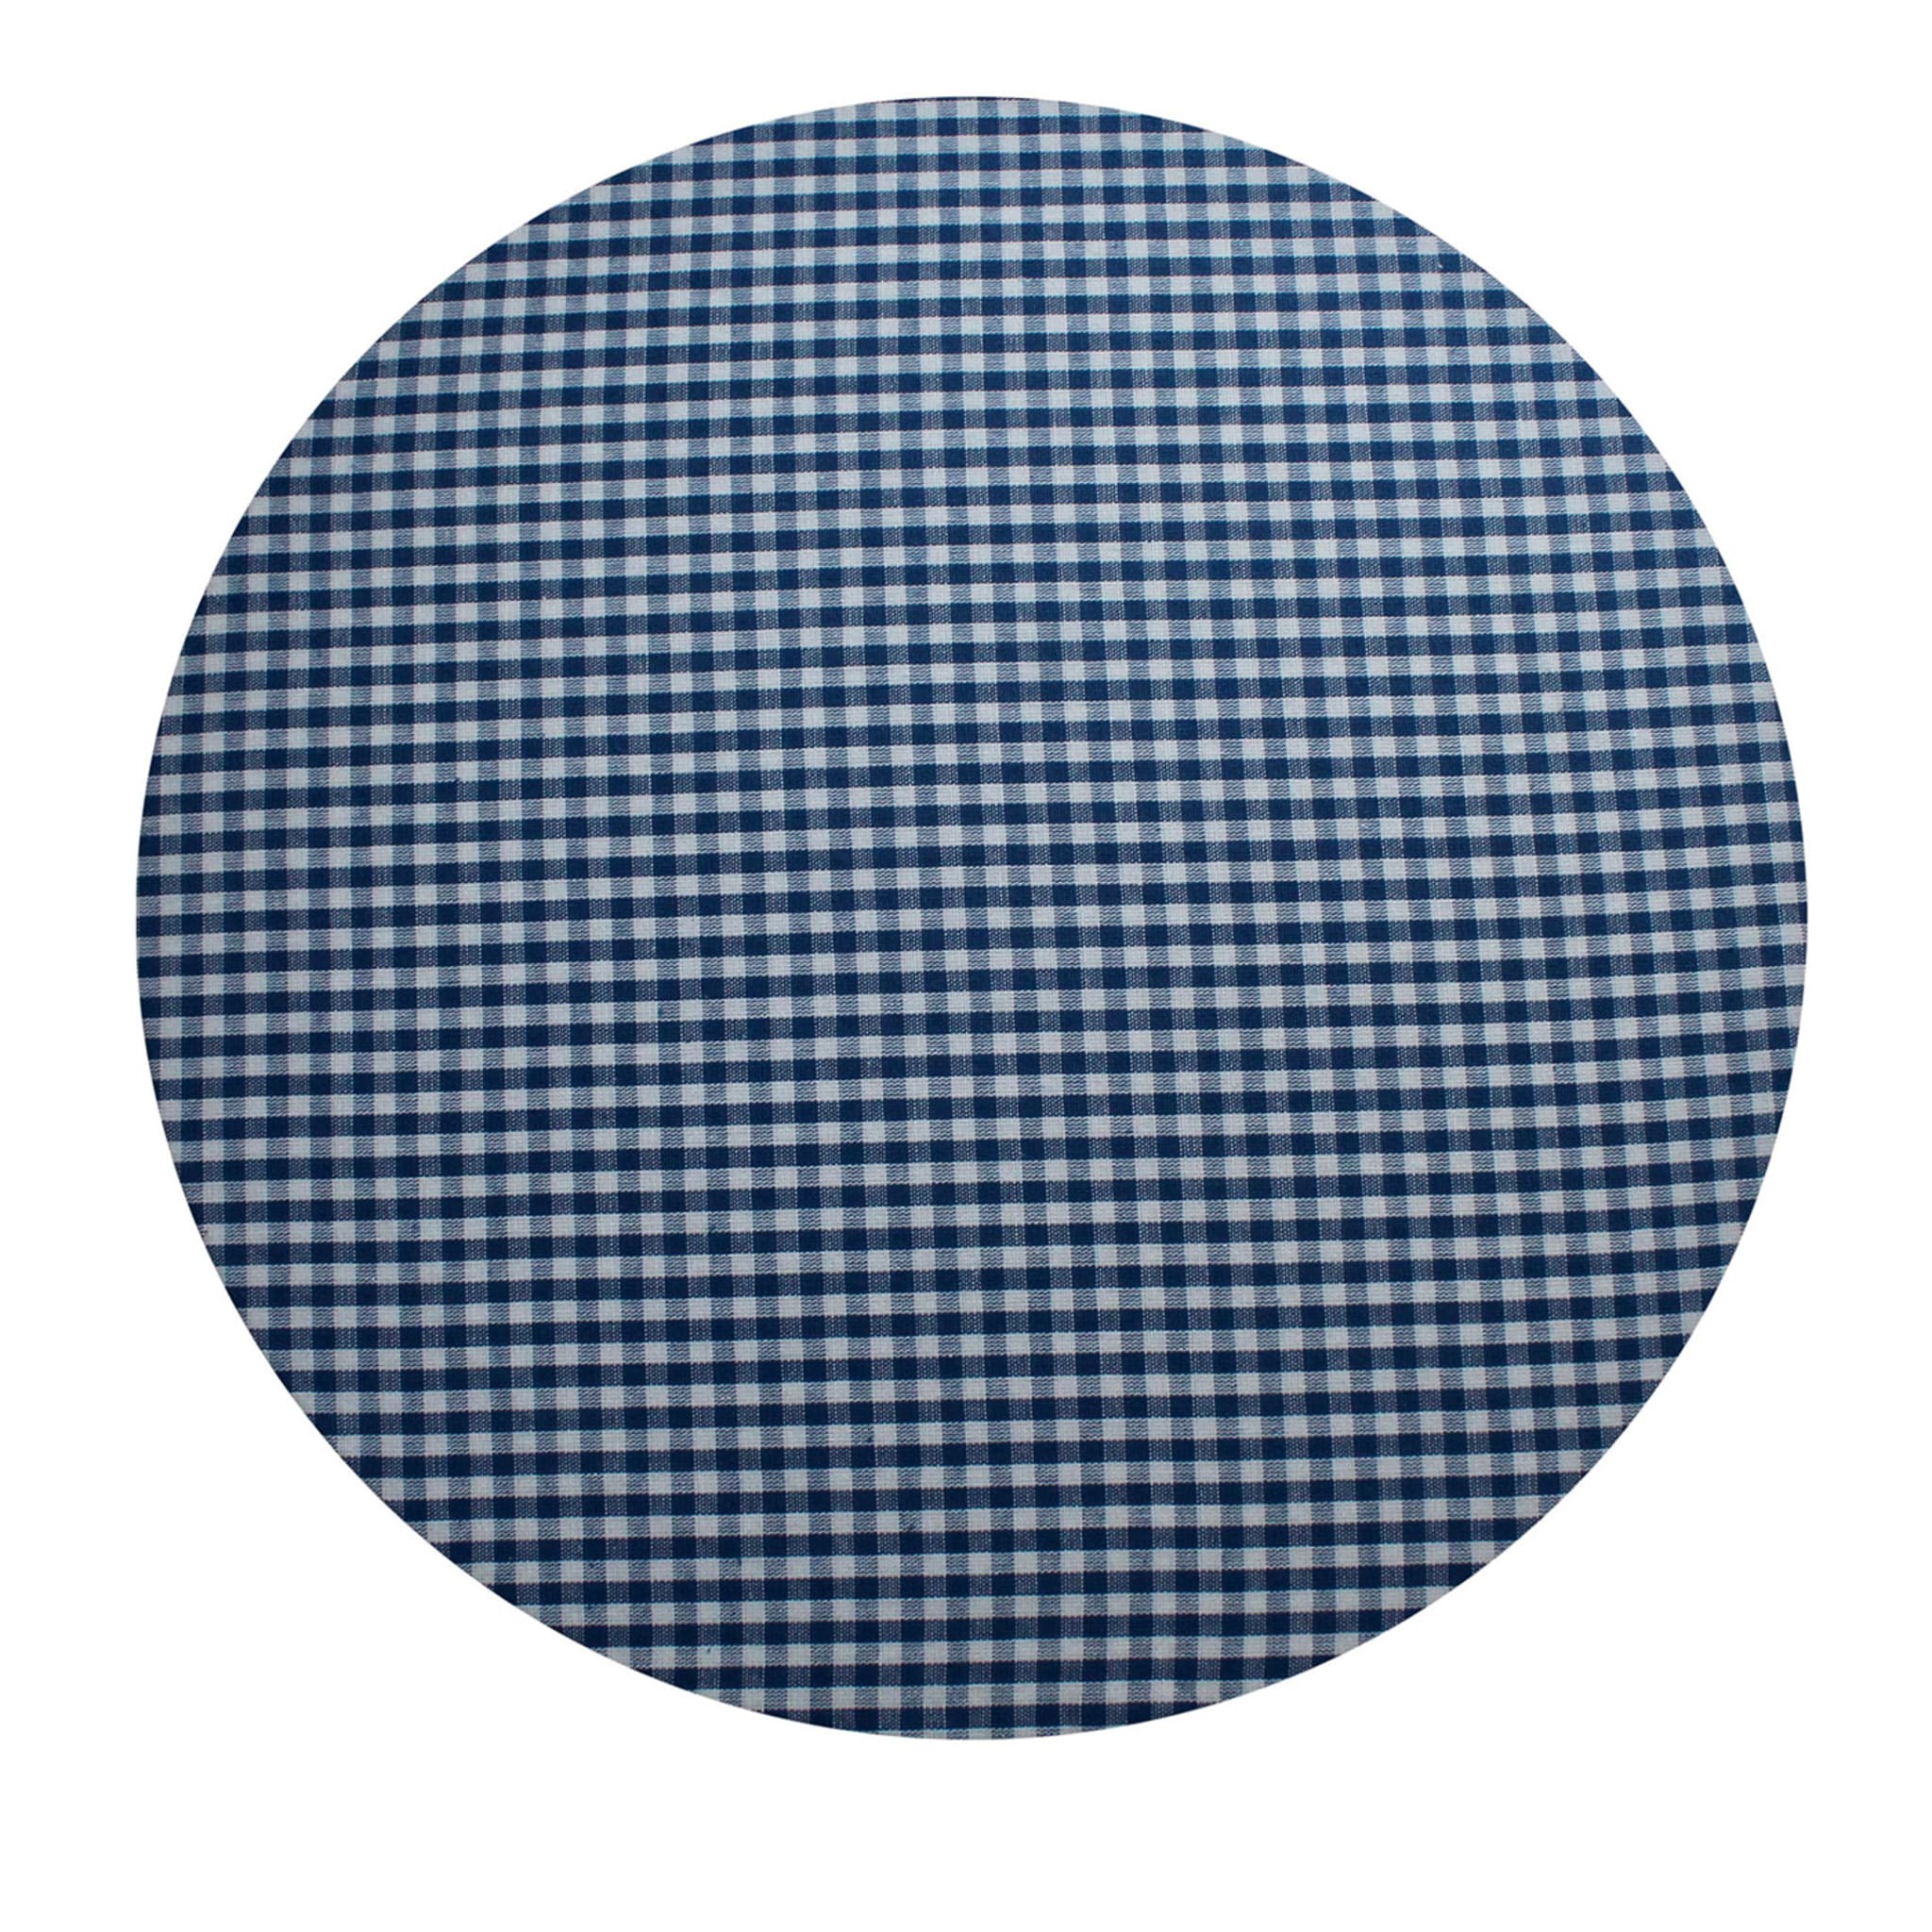 Mantel individual redondo a cuadros azul y blanco #1 - Vista principal